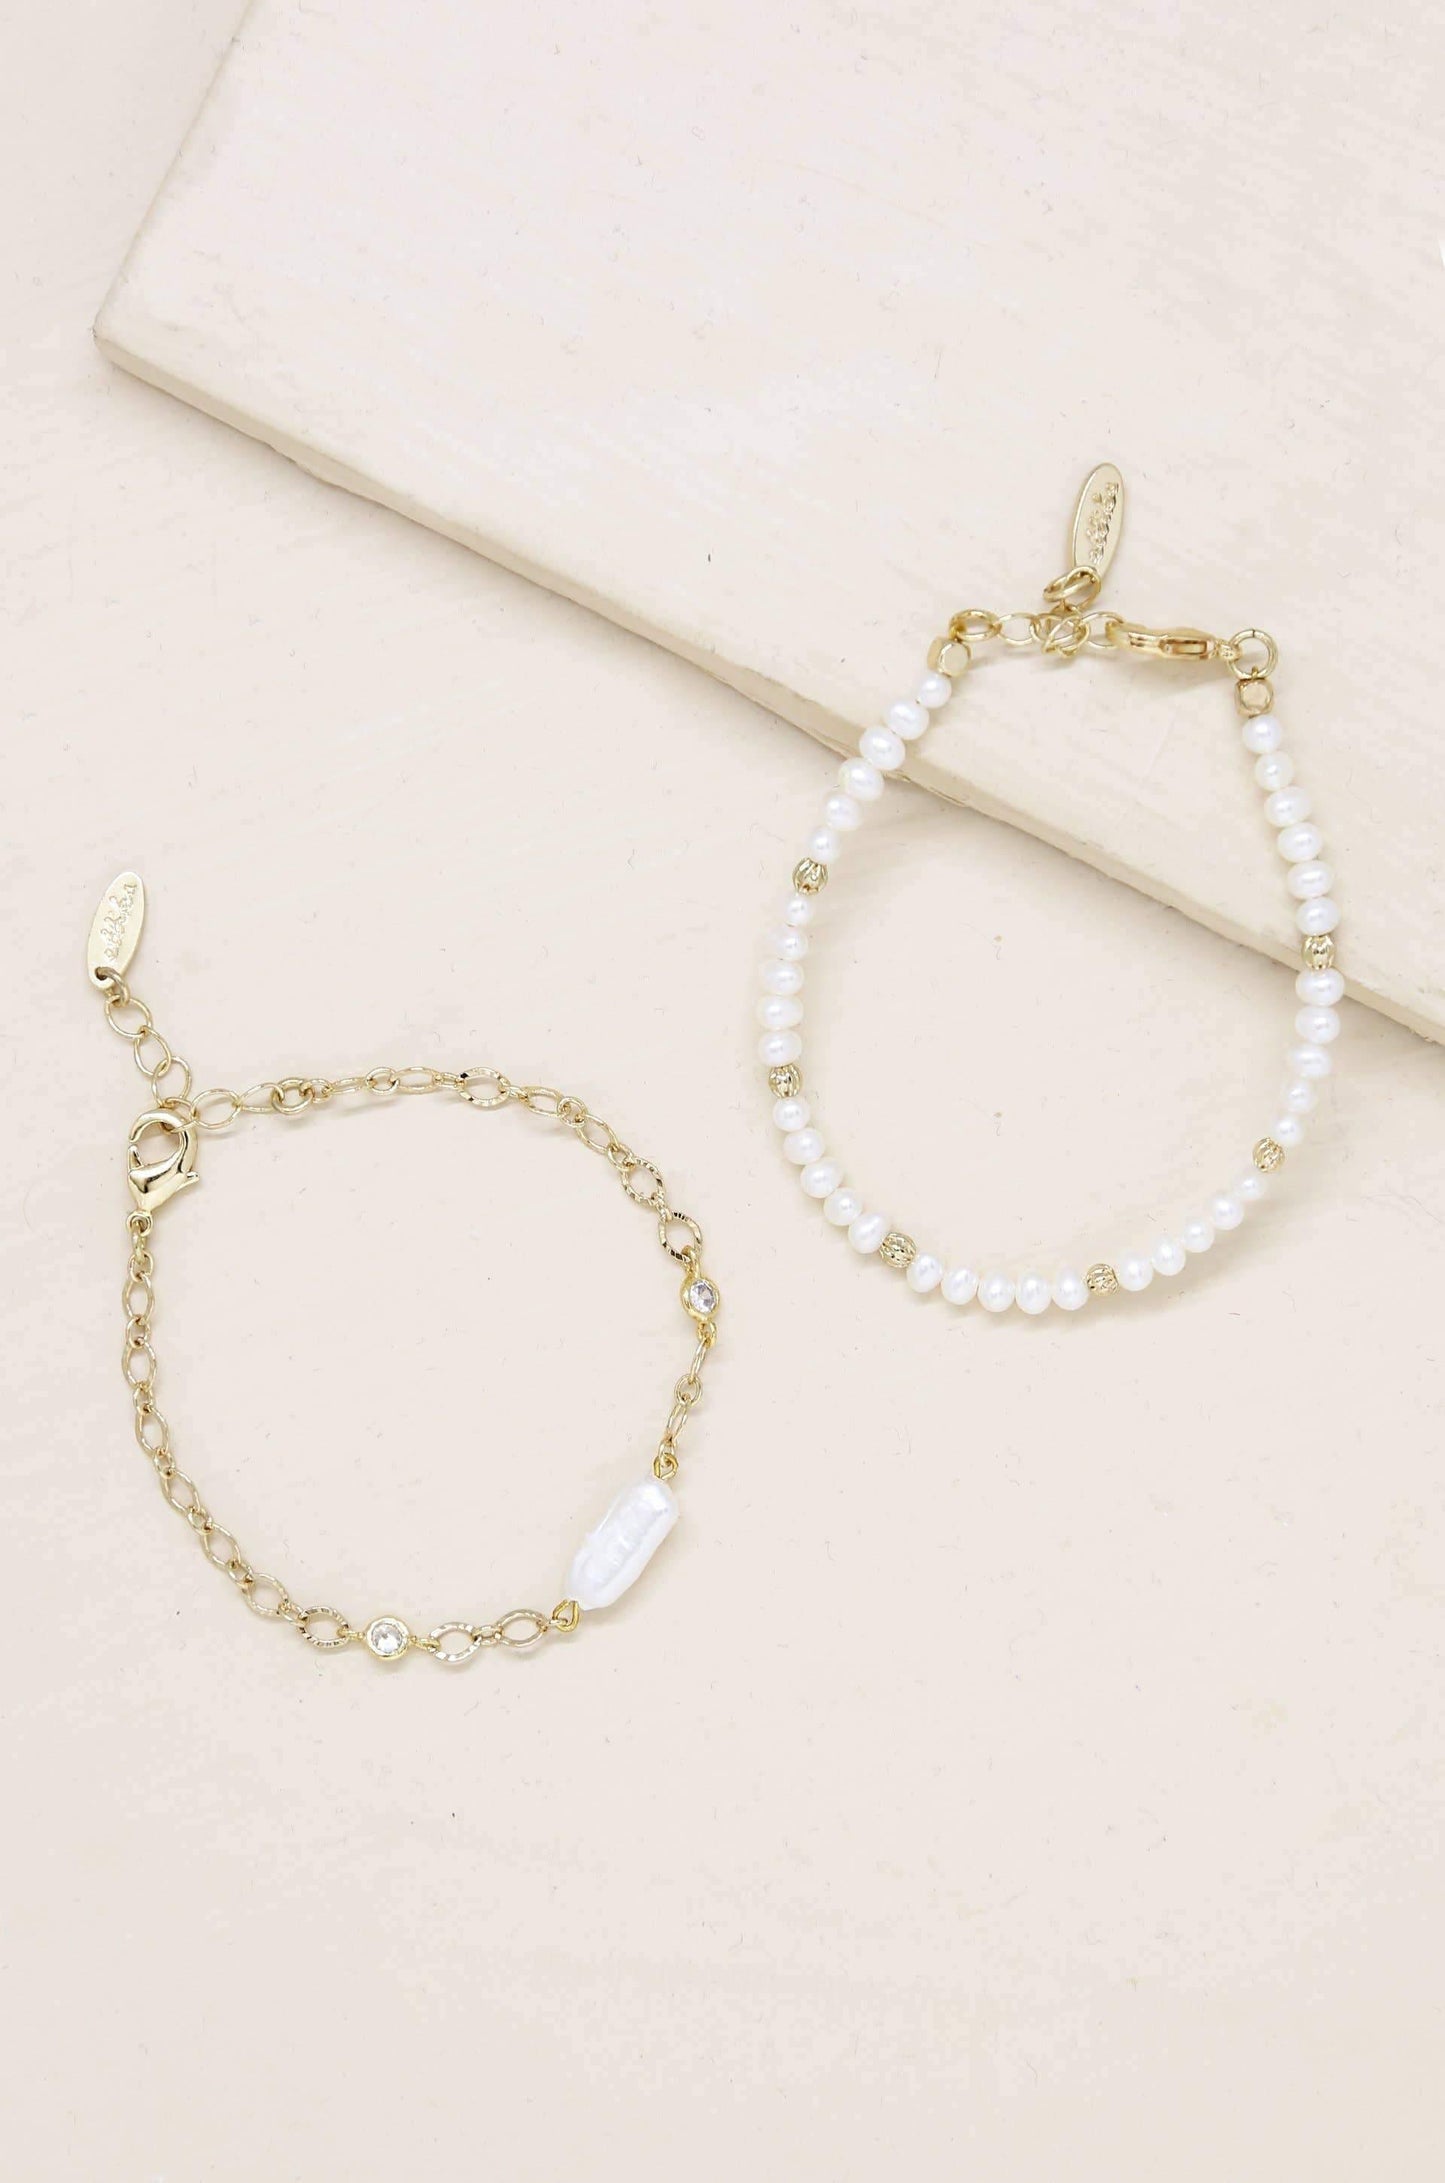 Pretty in Pearls Bracelet Set - Sorelle Gifts